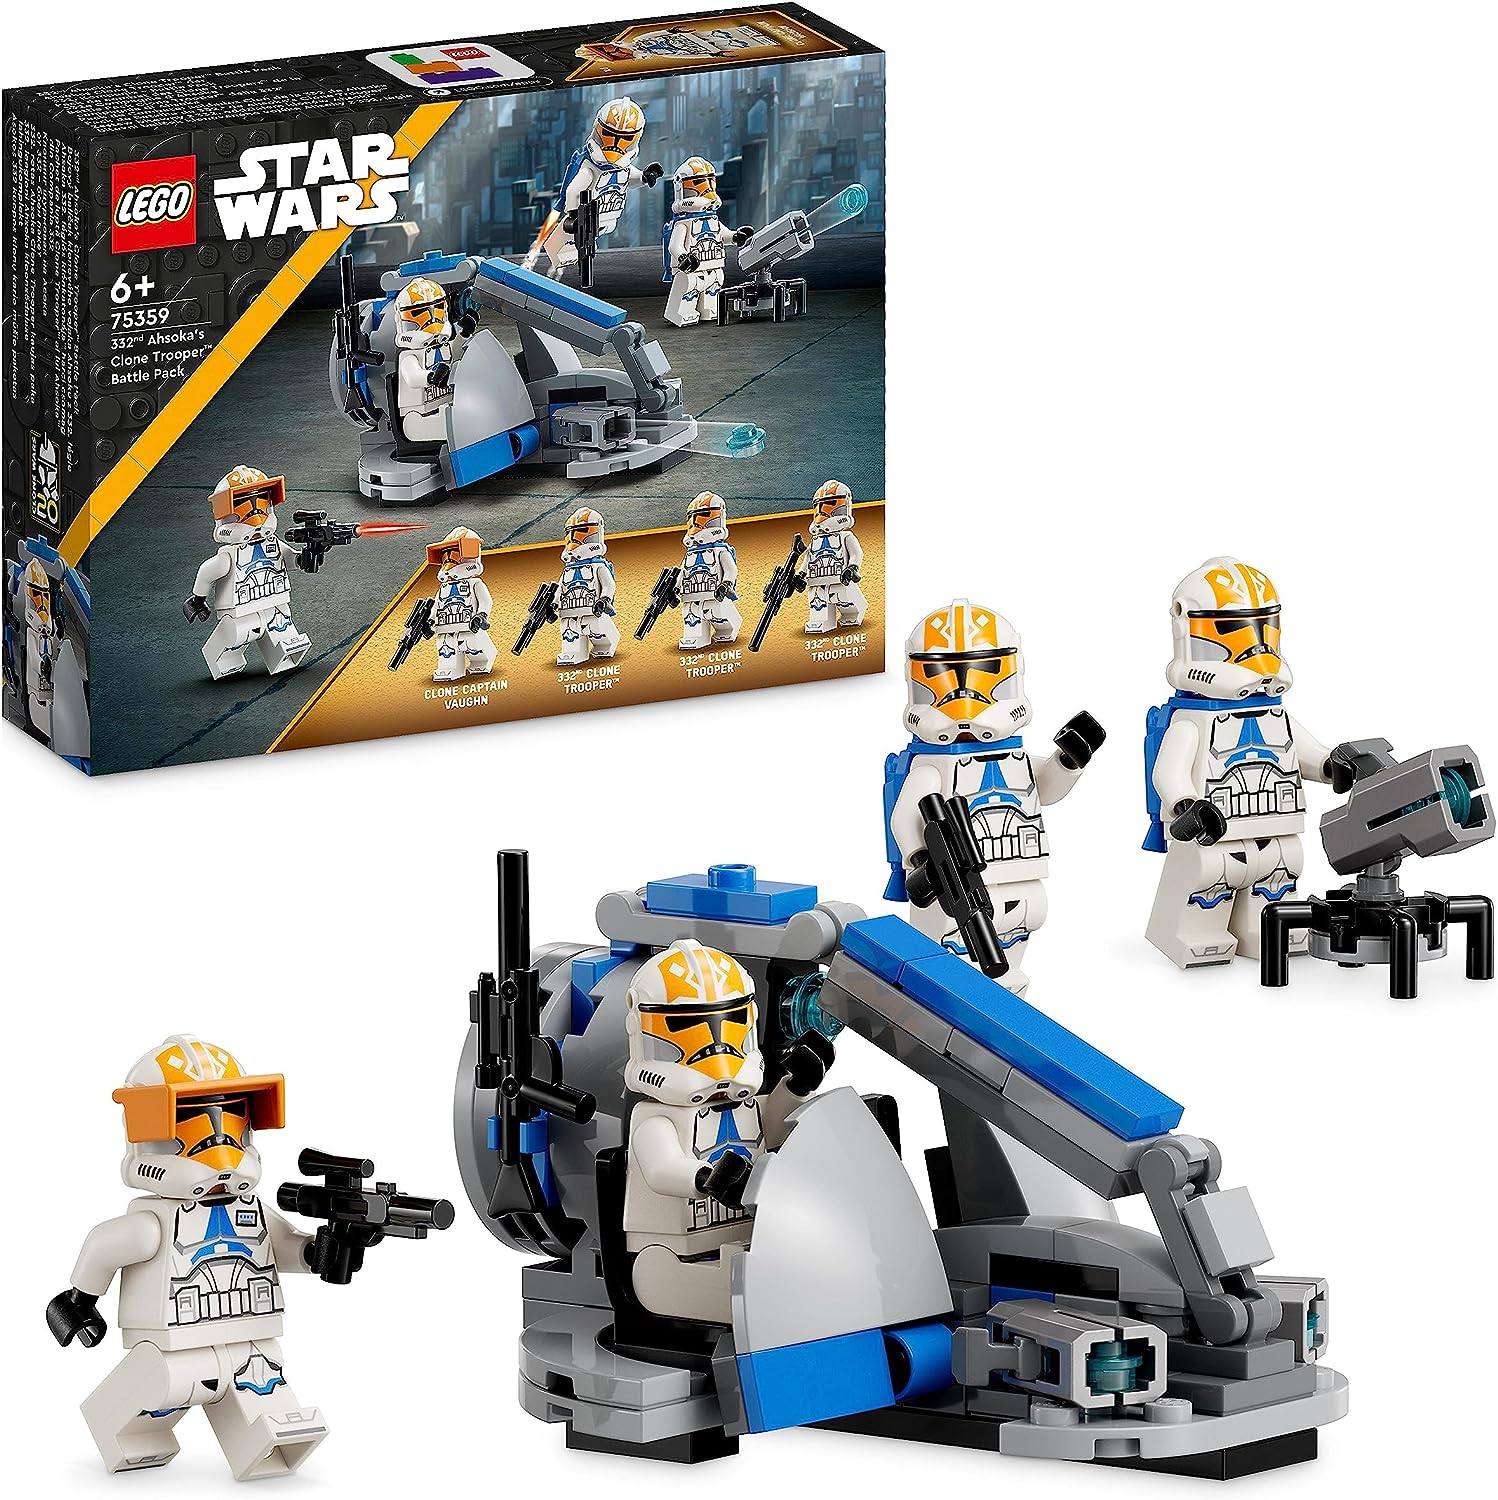 332nd Ahsoka's Clone Trooper Battle Pack - LEGO Star Wars Set (75359)